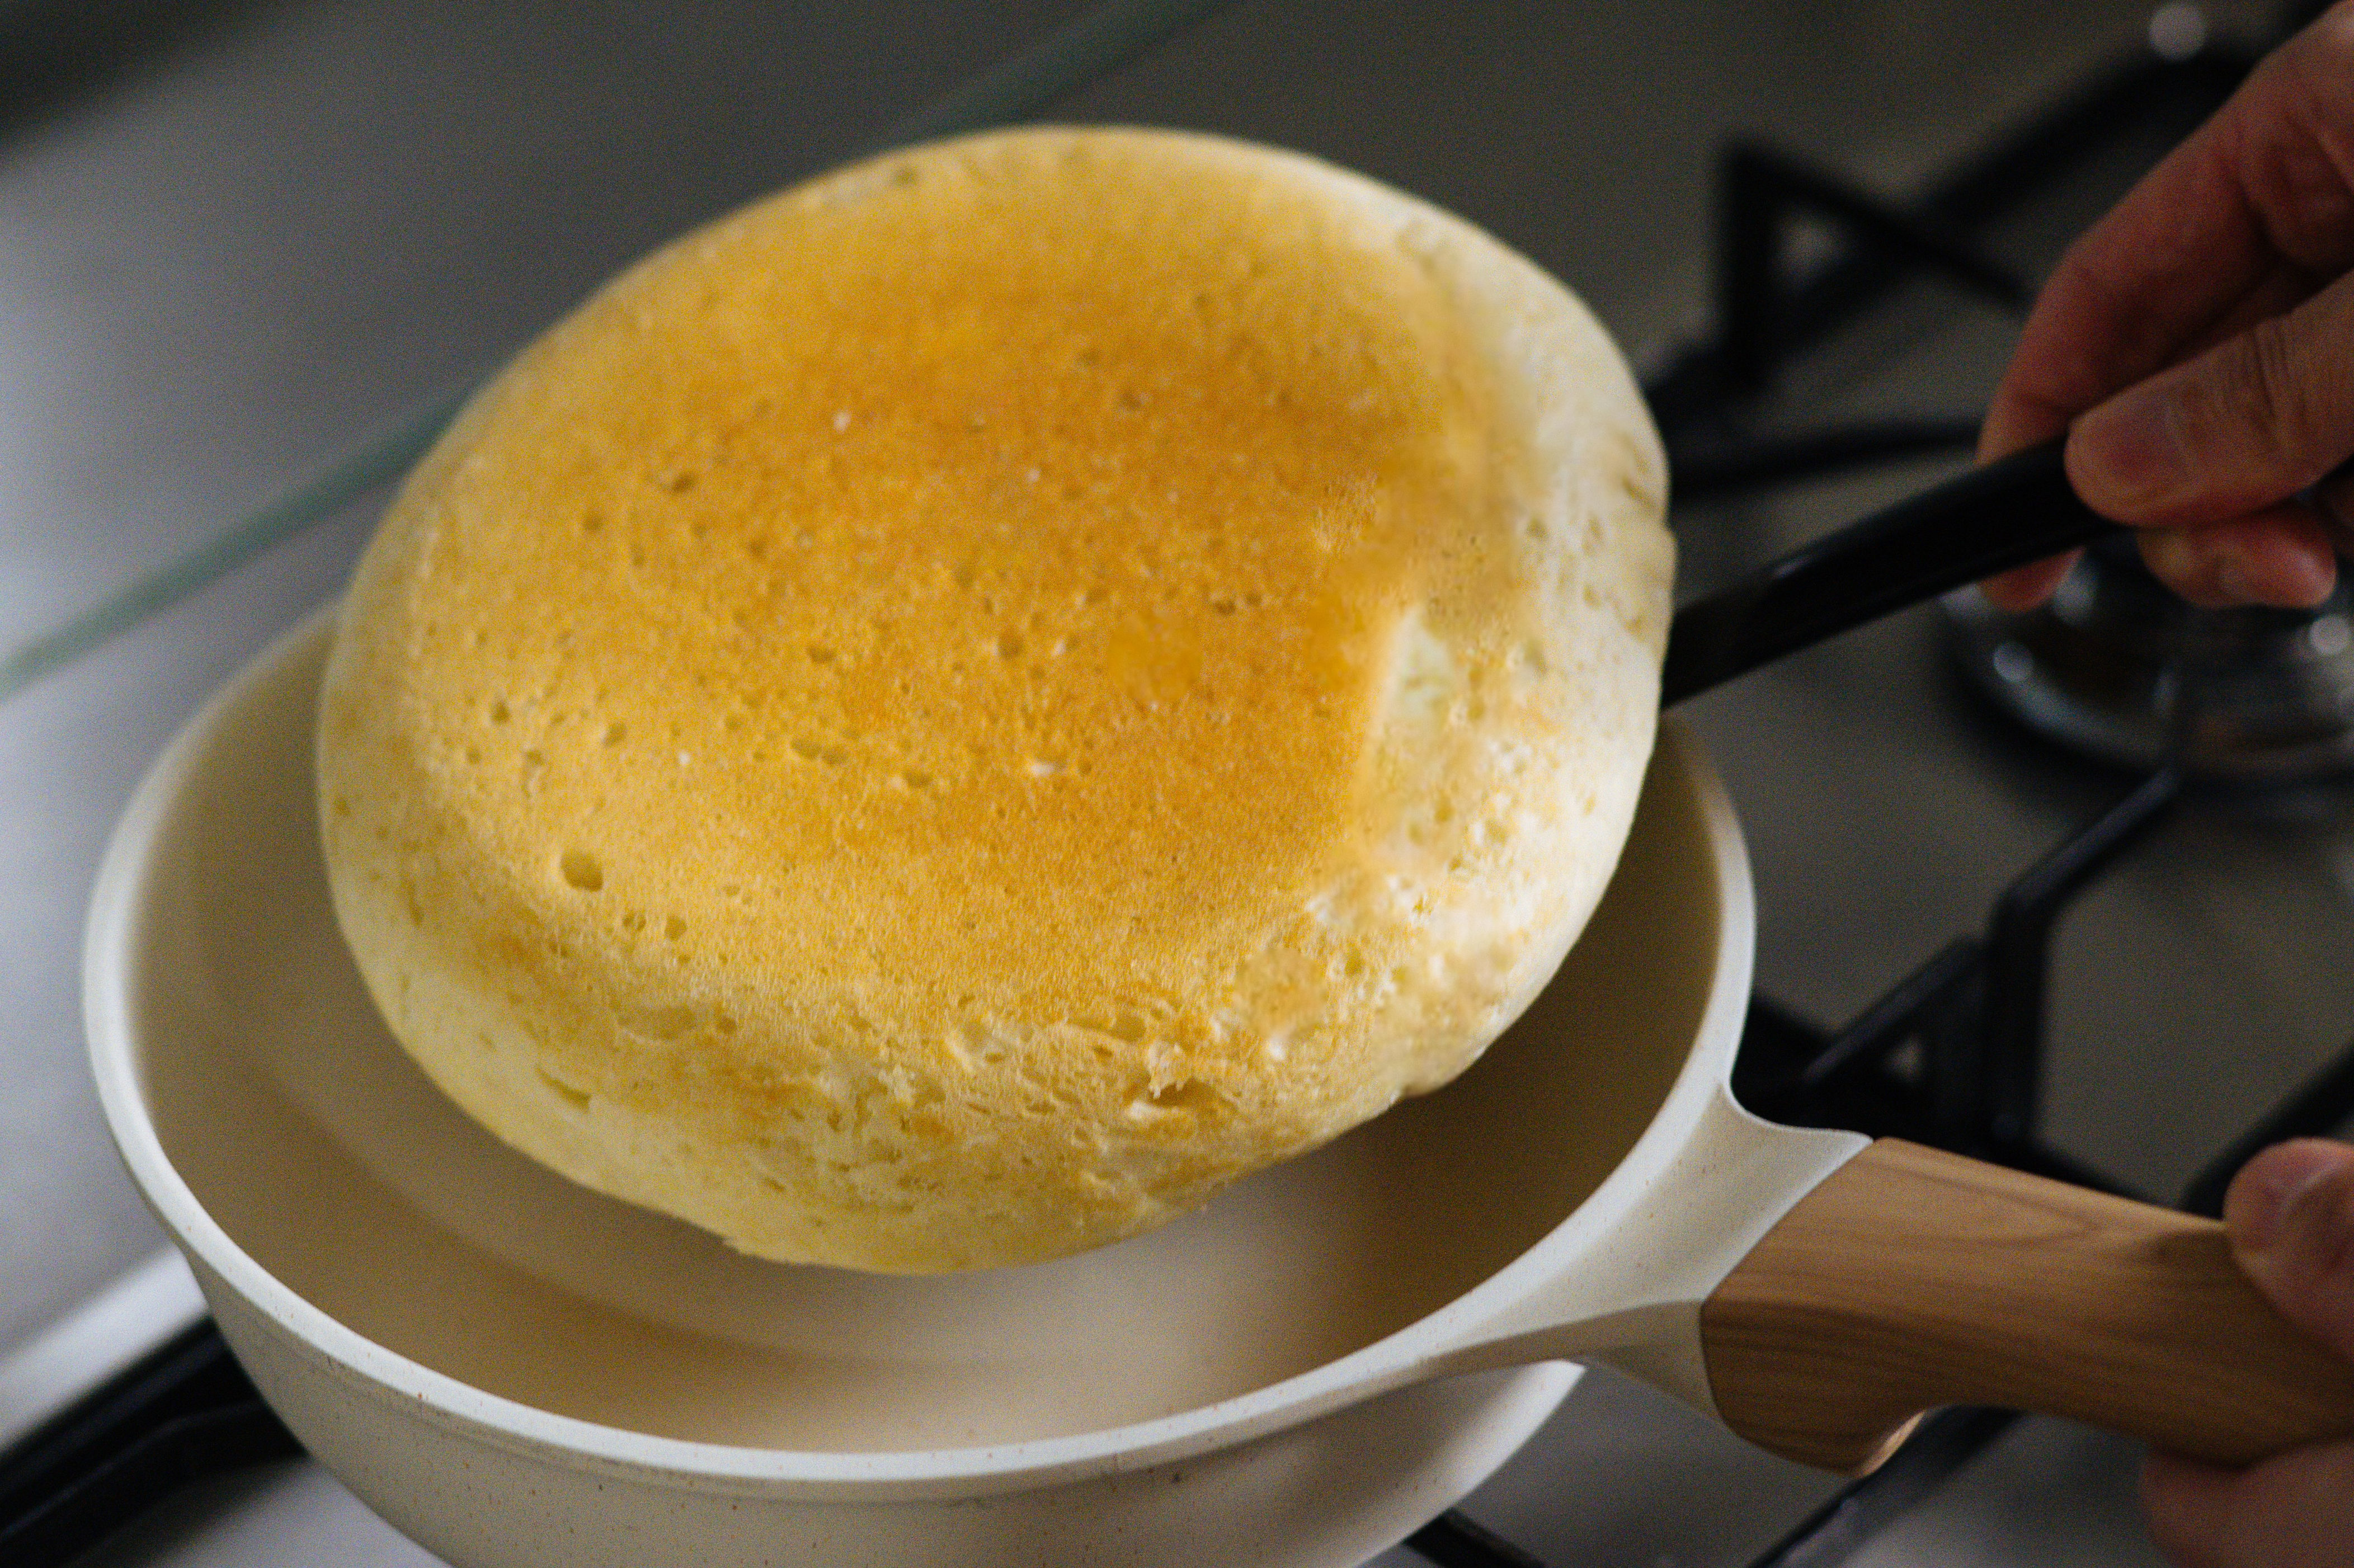 フライパン1つでできる「世界一簡単なパン」のつくり方。ほぼほったらかしで10分で完成